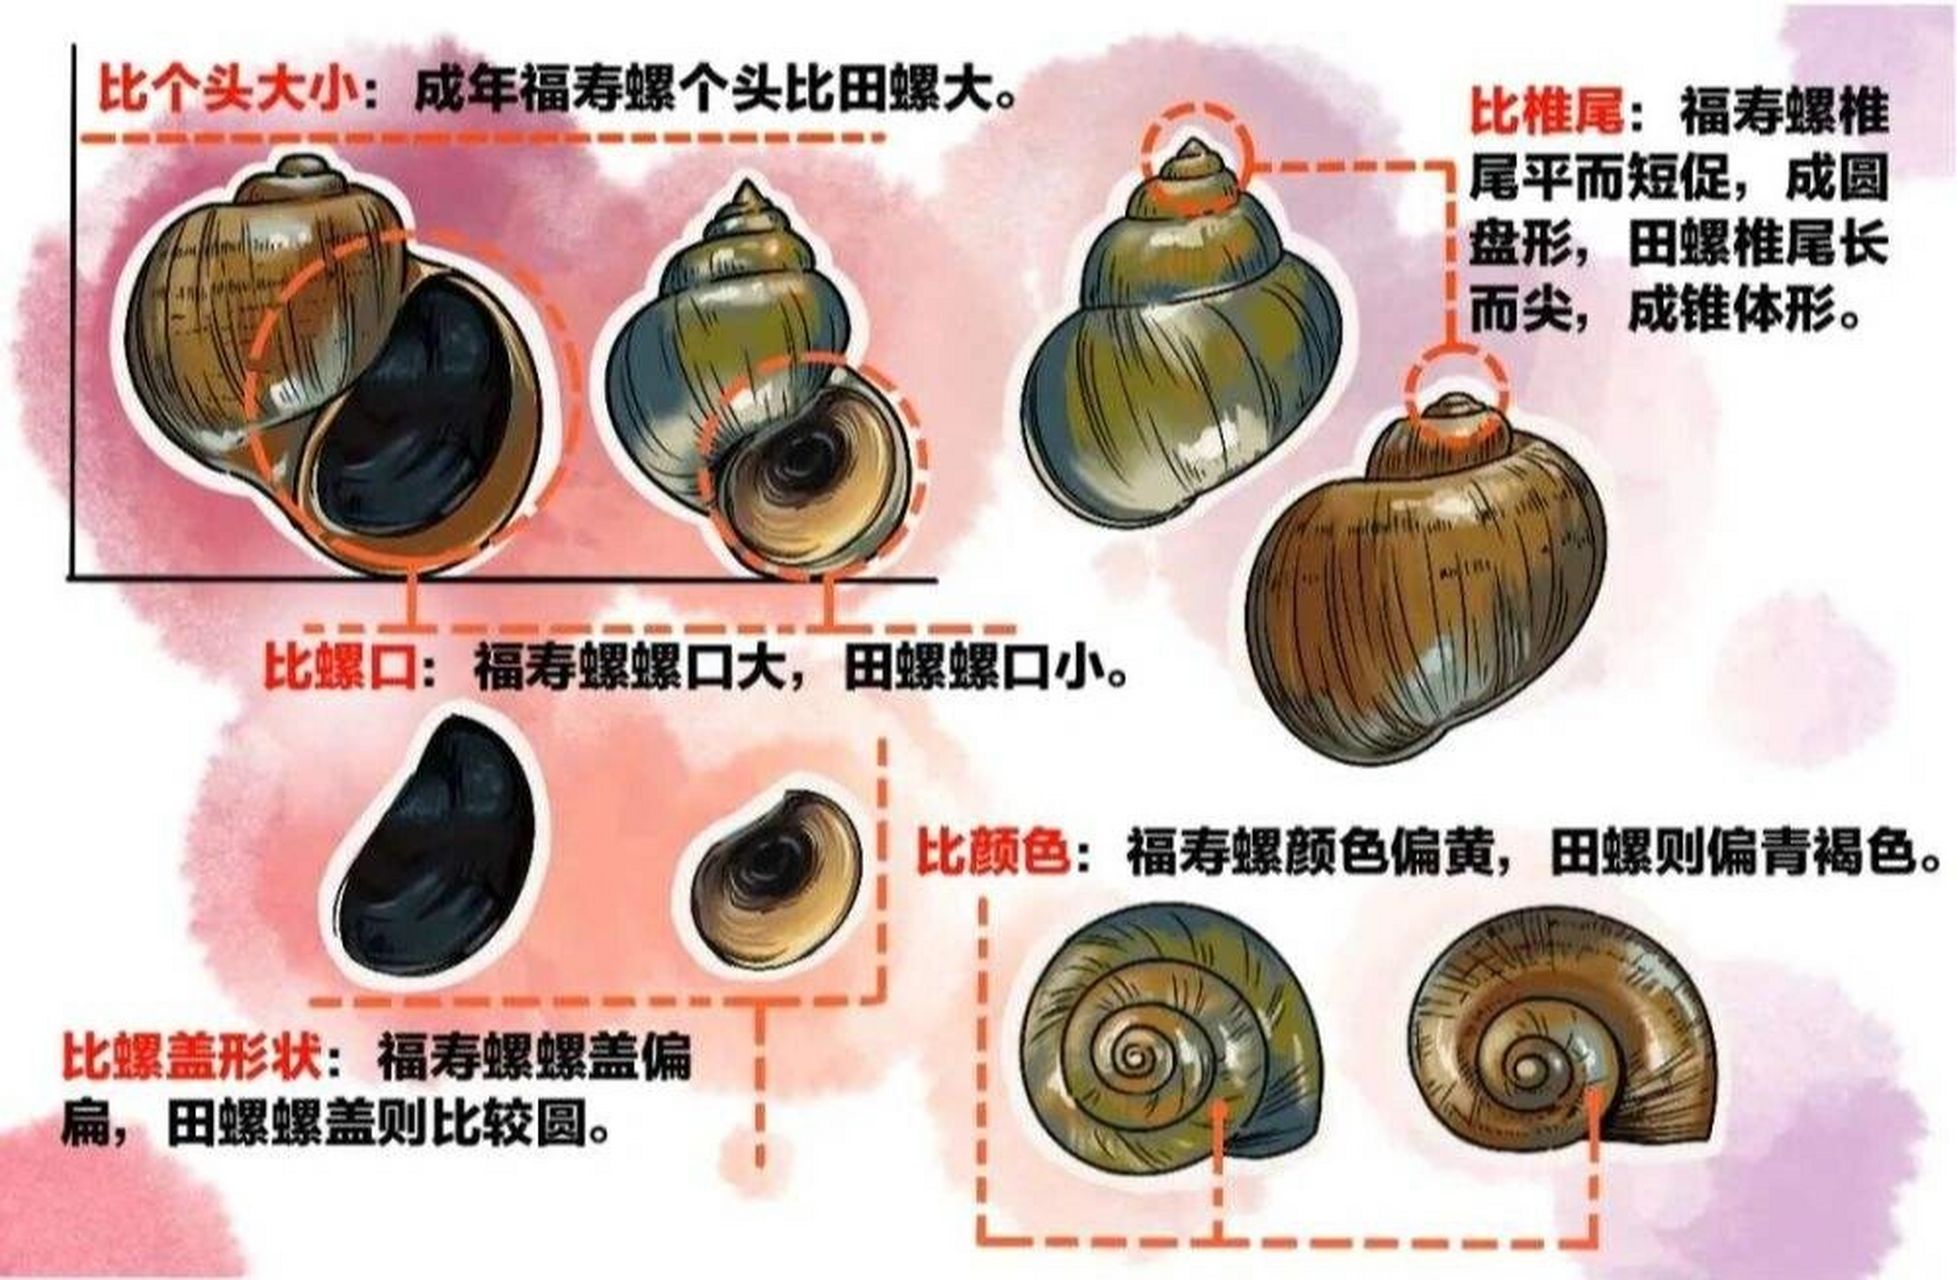 海螺分类图片和名称图片